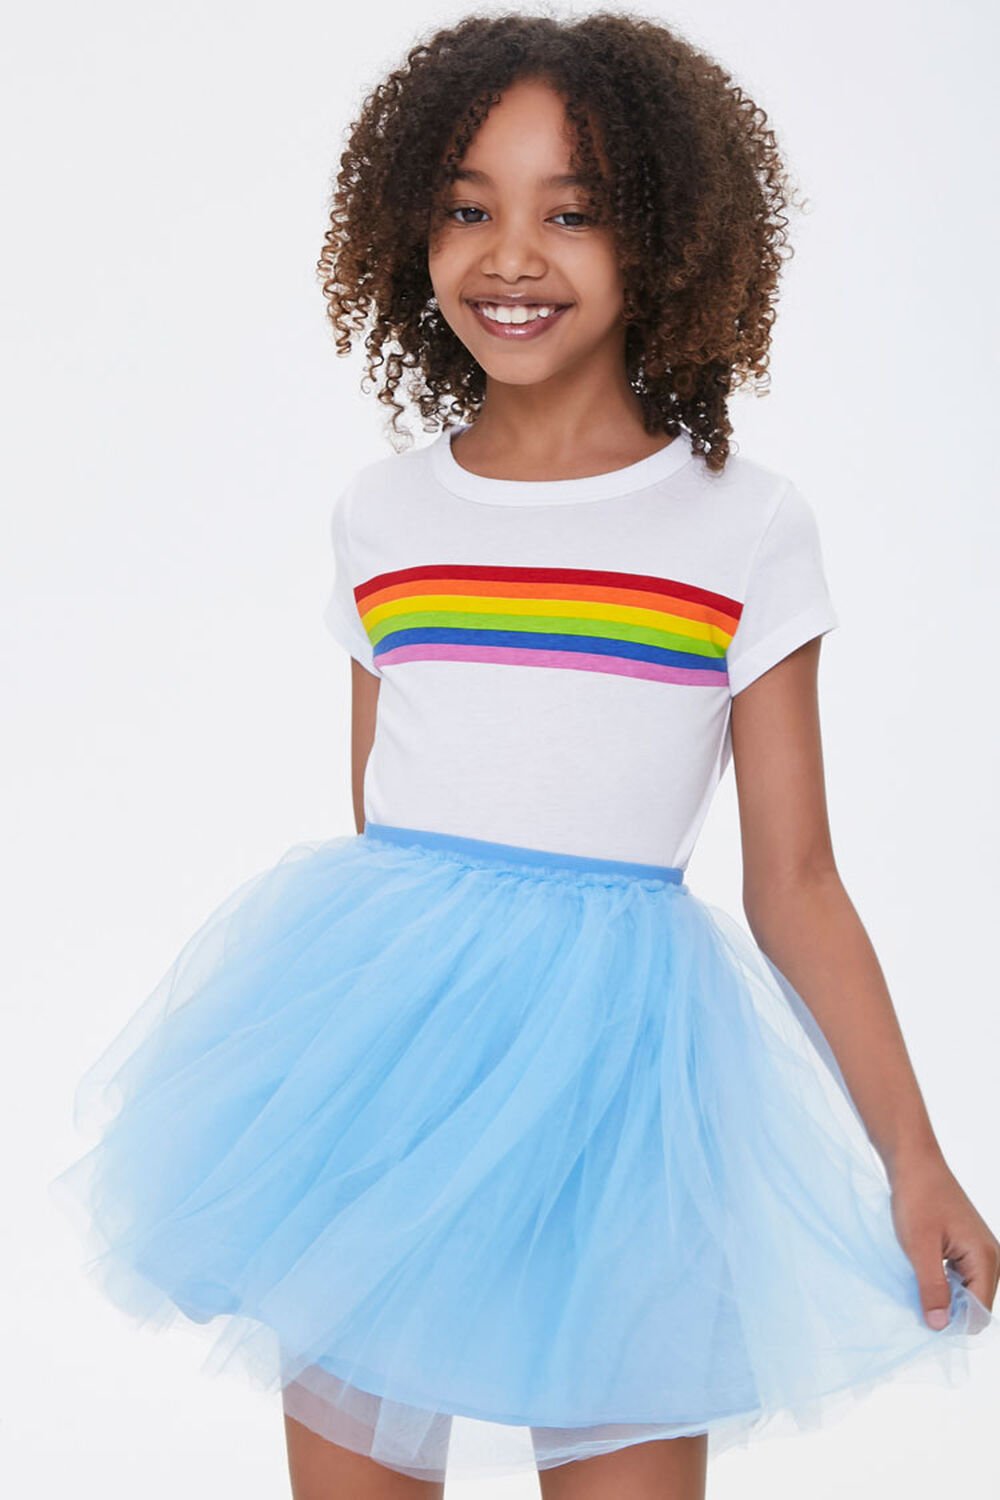 BLUE Girls Tulle Ballerina Skirt (Kids), image 1